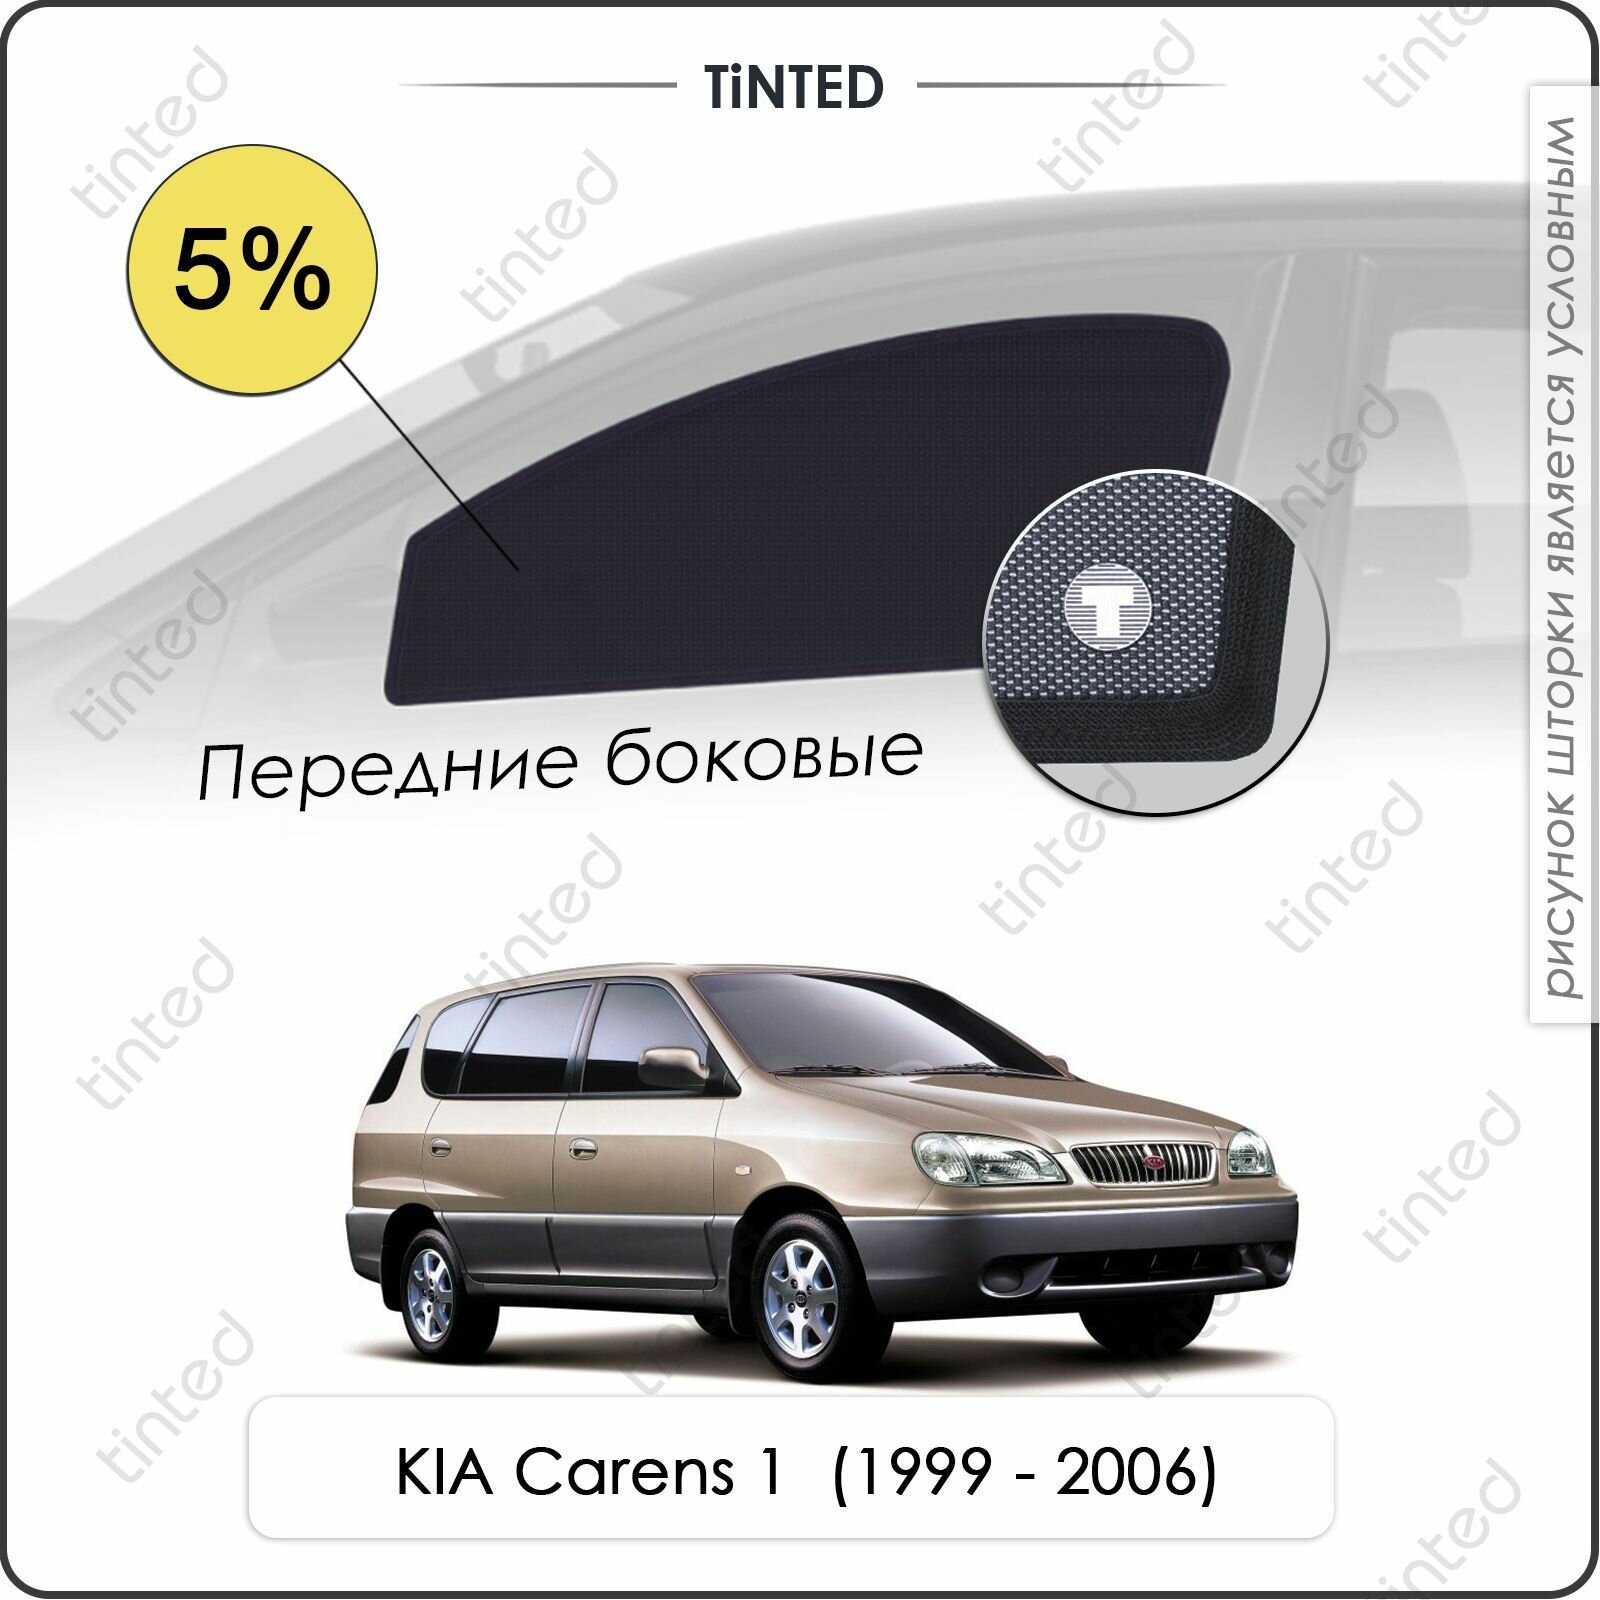 Шторки на автомобиль солнцезащитные KIA Carens 1 Минивэн 5дв. (1999 - 2006) на передние двери 5%, сетки от солнца в машину КИА каренс, Каркасные автошторки Premium